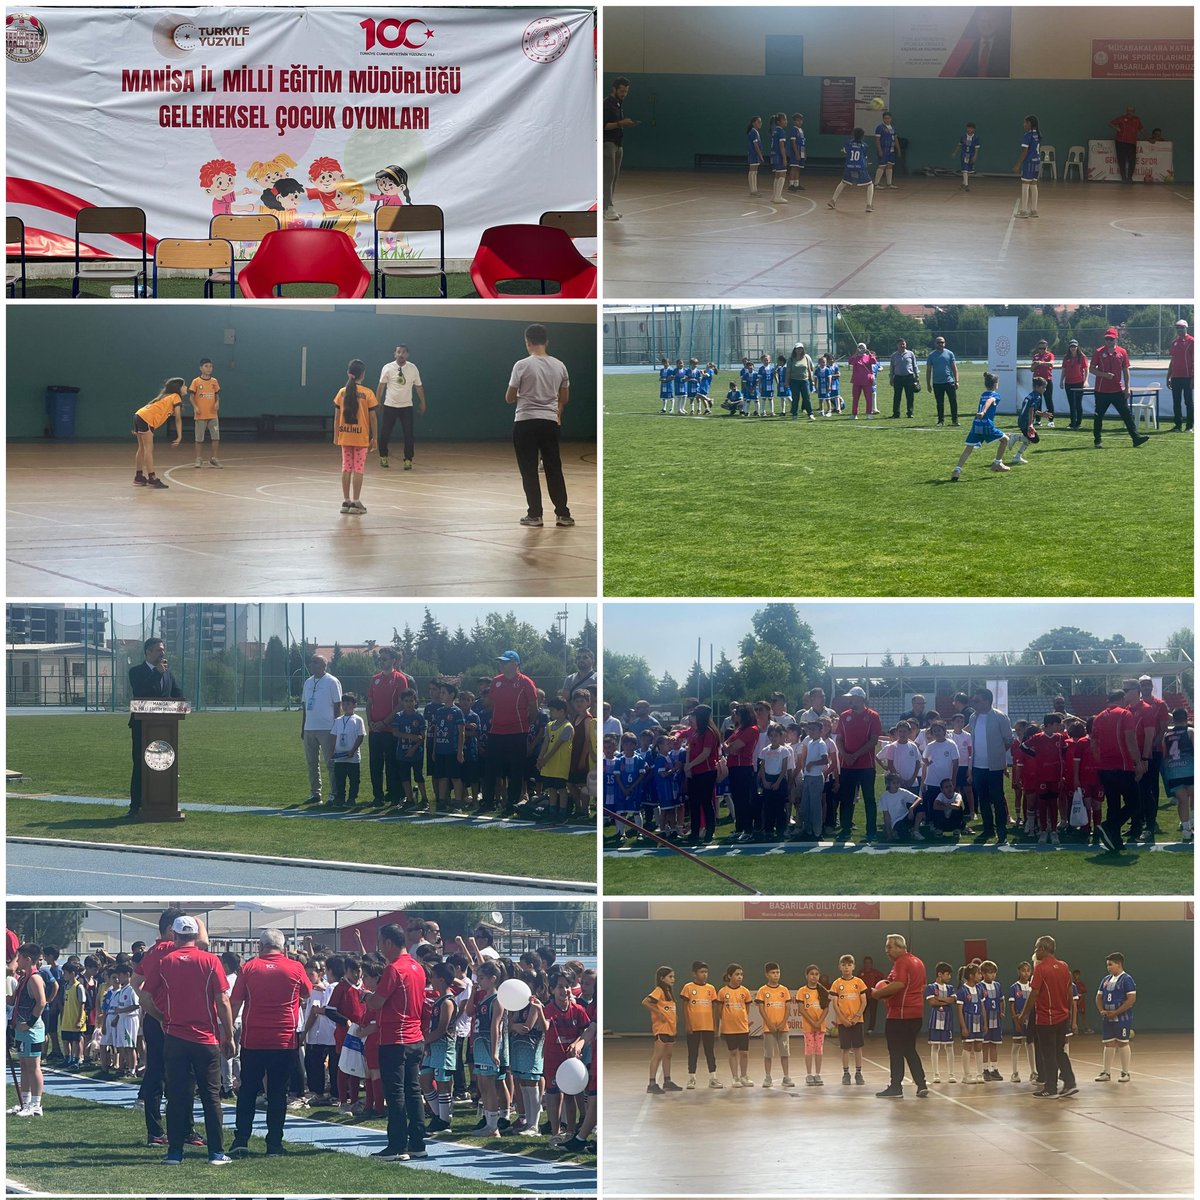 📌Yunusemre İlçe Gençlik ve Spor Manisa İl Milli Eğitim Müdürlüğü Geleneksel Çocuk Oyunları etkinliğimiz başladı. @OA_BAK @ozturkyunus45